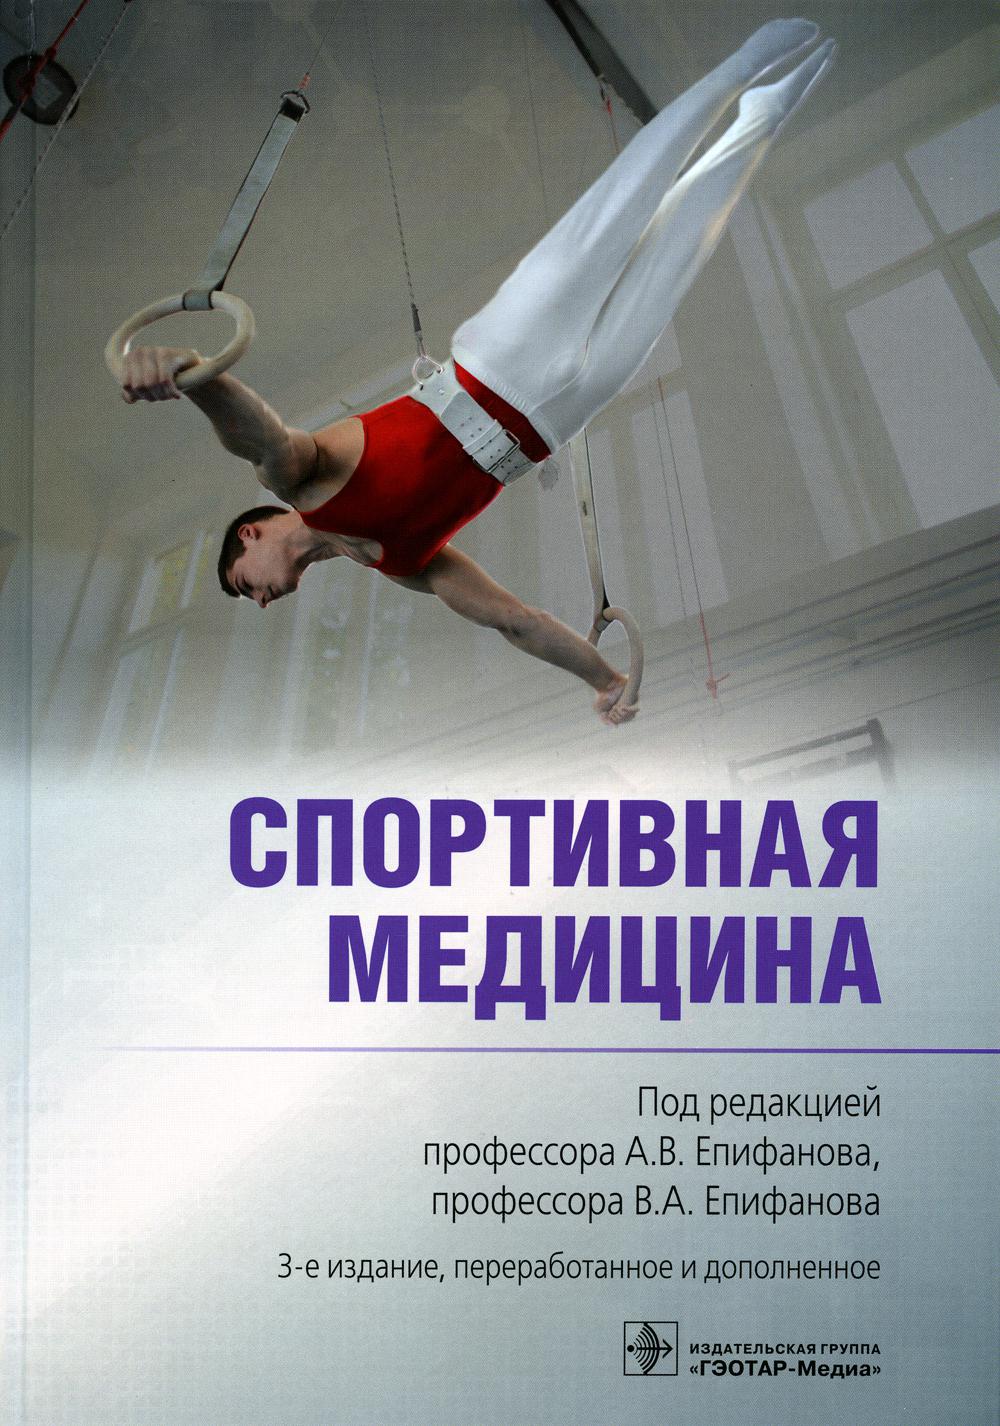 фото Книга спортивная медицина гэотар-медиа